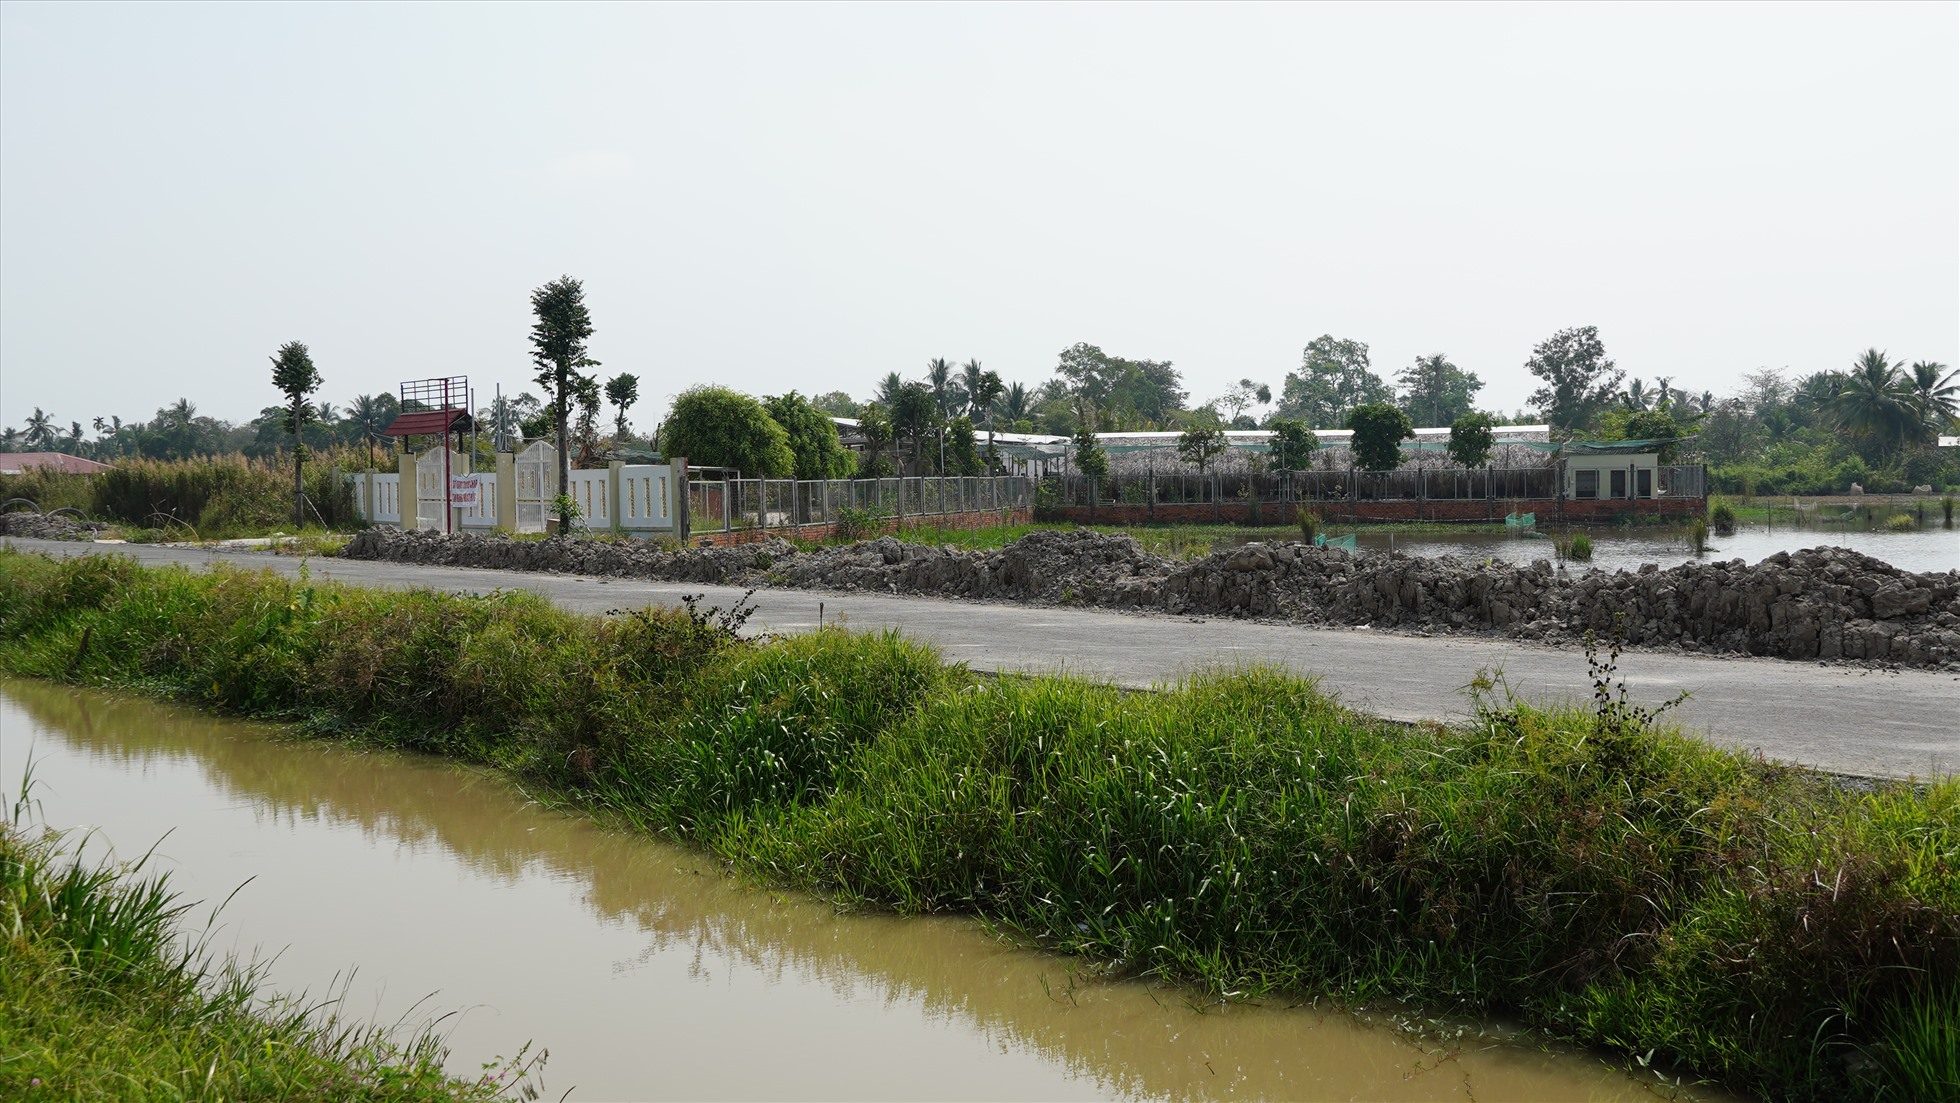 Cũng thuộc quận Bình Thủy, quán Ẩm thực đồng quê MeKong cũng được phát hiện xây dựng trên đất lúa.